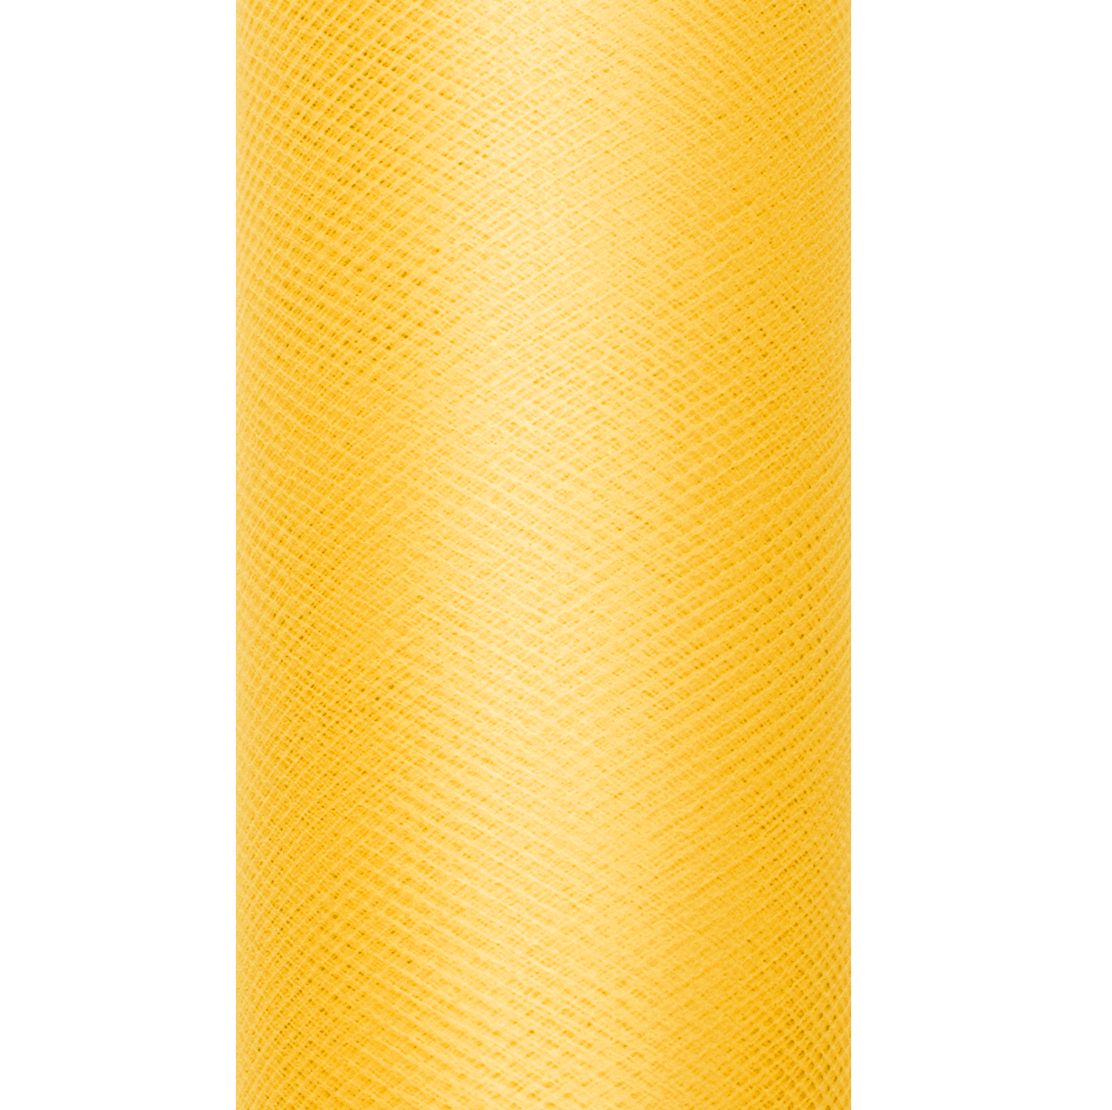 Tiul na szpulce 30cmx9m - żółty